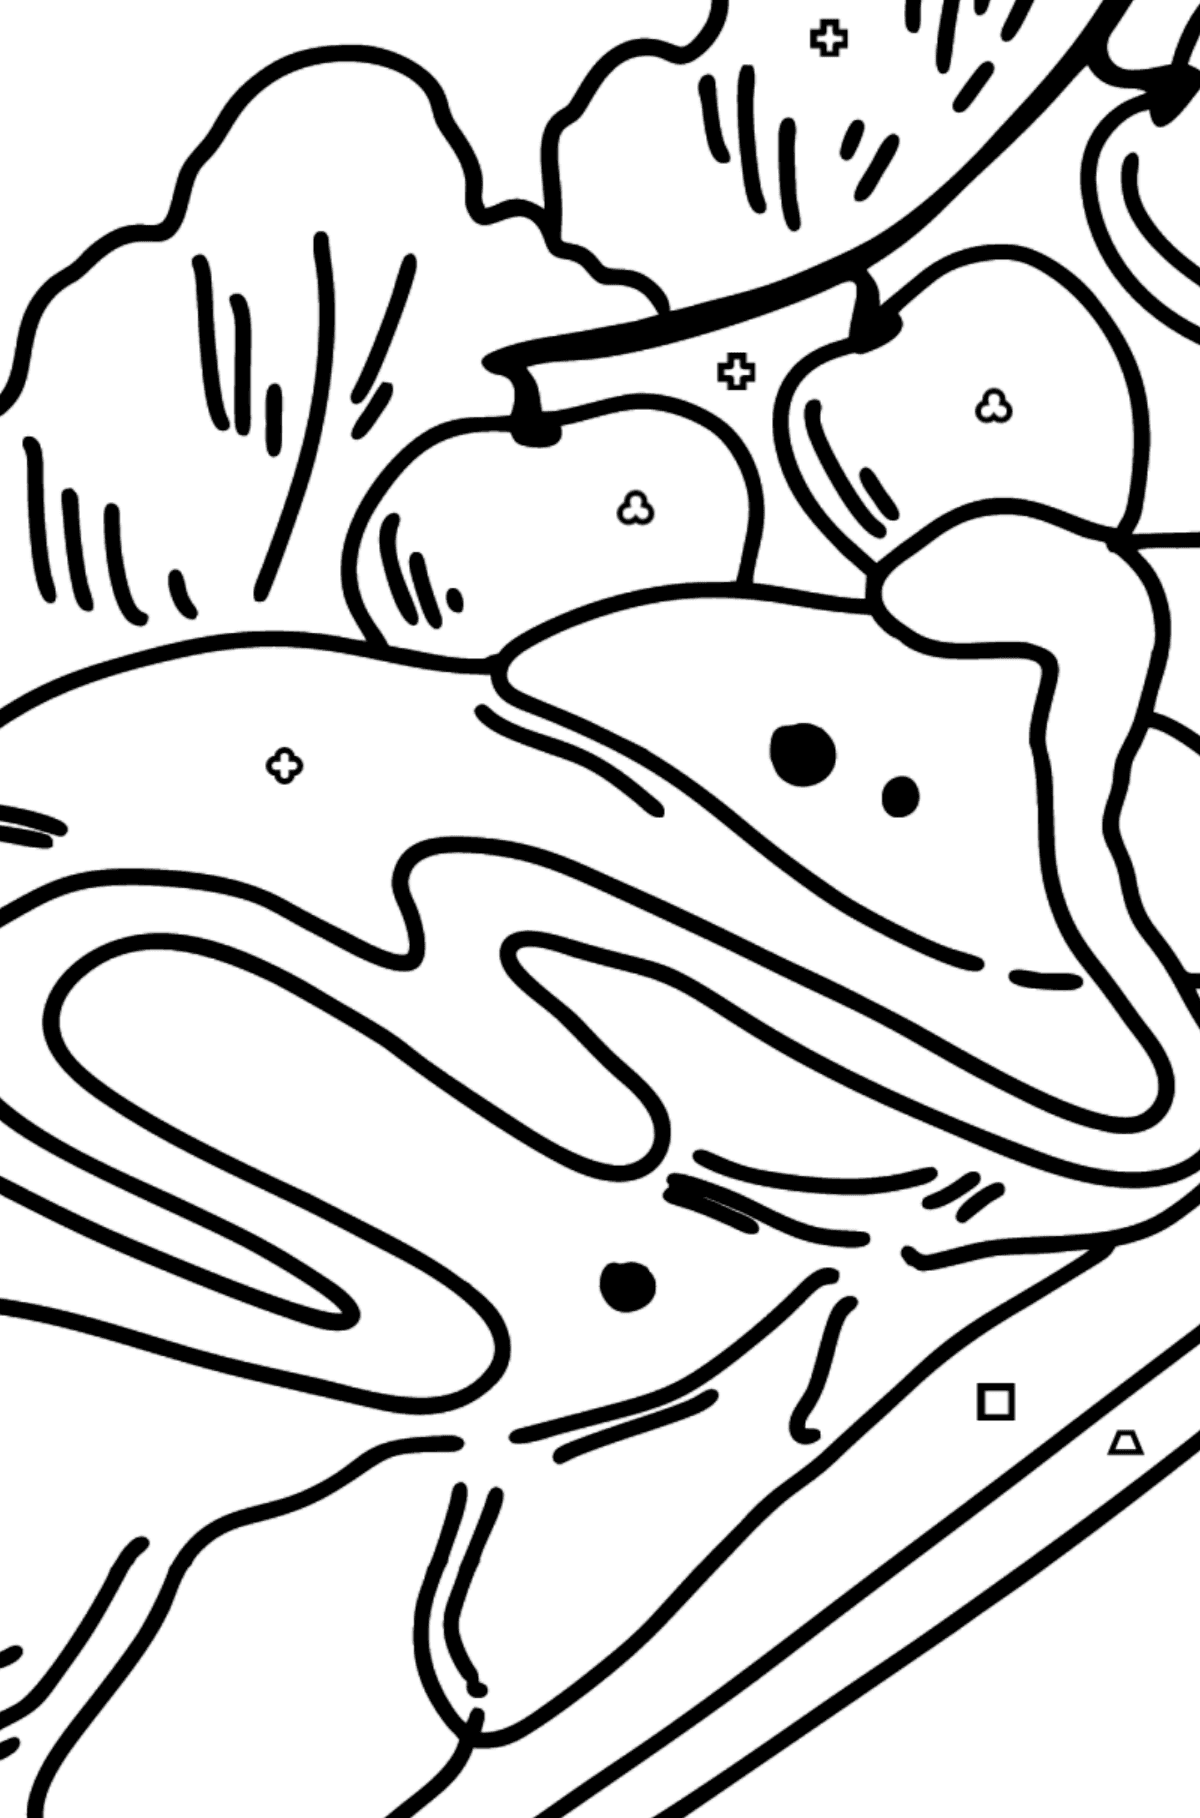 Boyama sayfası ton balıklı salata - Geometrik Şekillerle Boyama çocuklar için